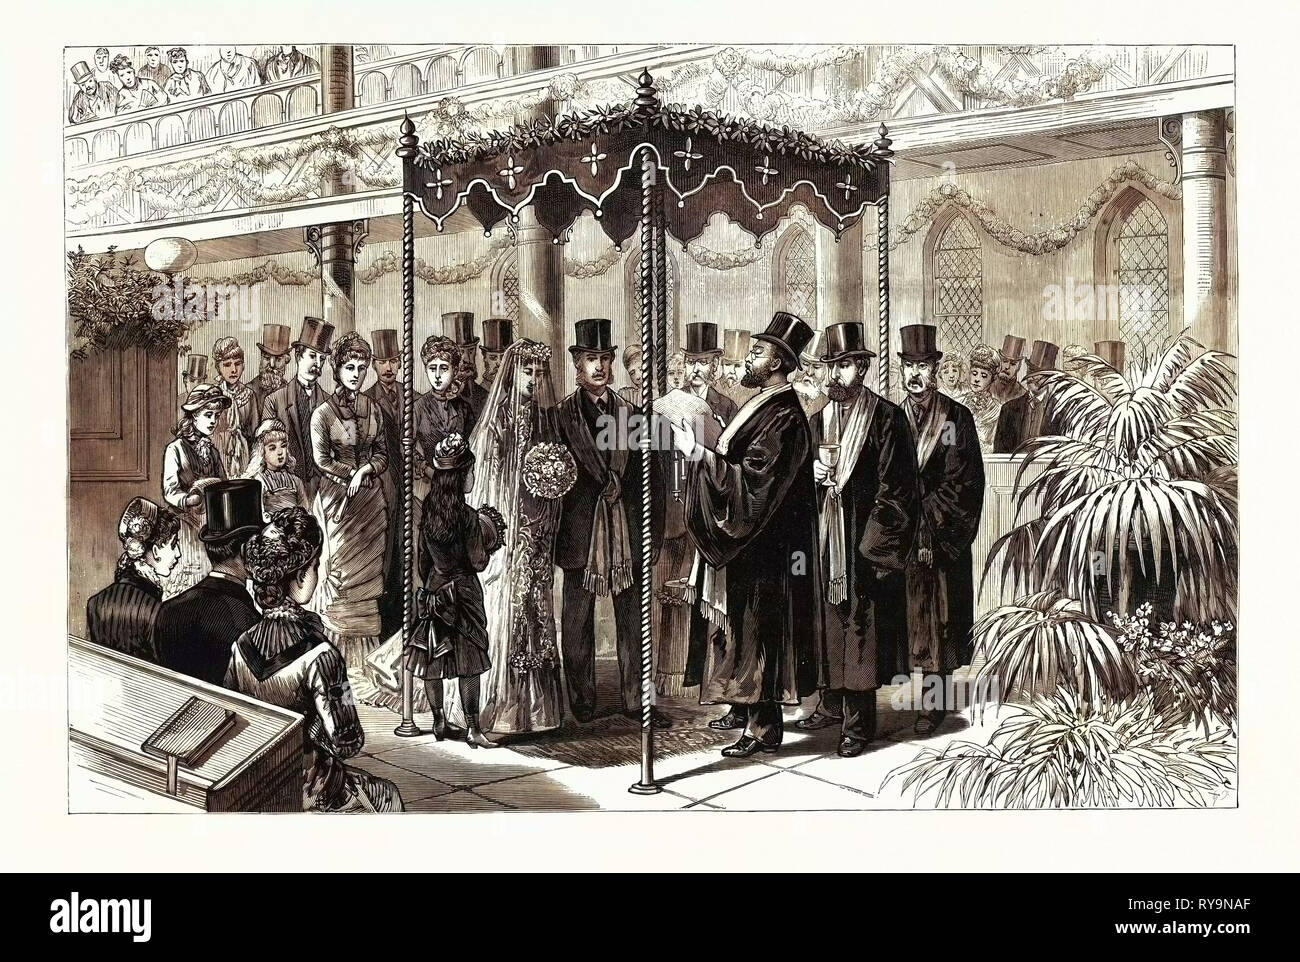 Die Rothschild-Perugia Hochzeit in London, 19. Januar, der hebräische Zeremonie unter dem Baldachin, UK, Gravur 1880 1881 Stockfoto